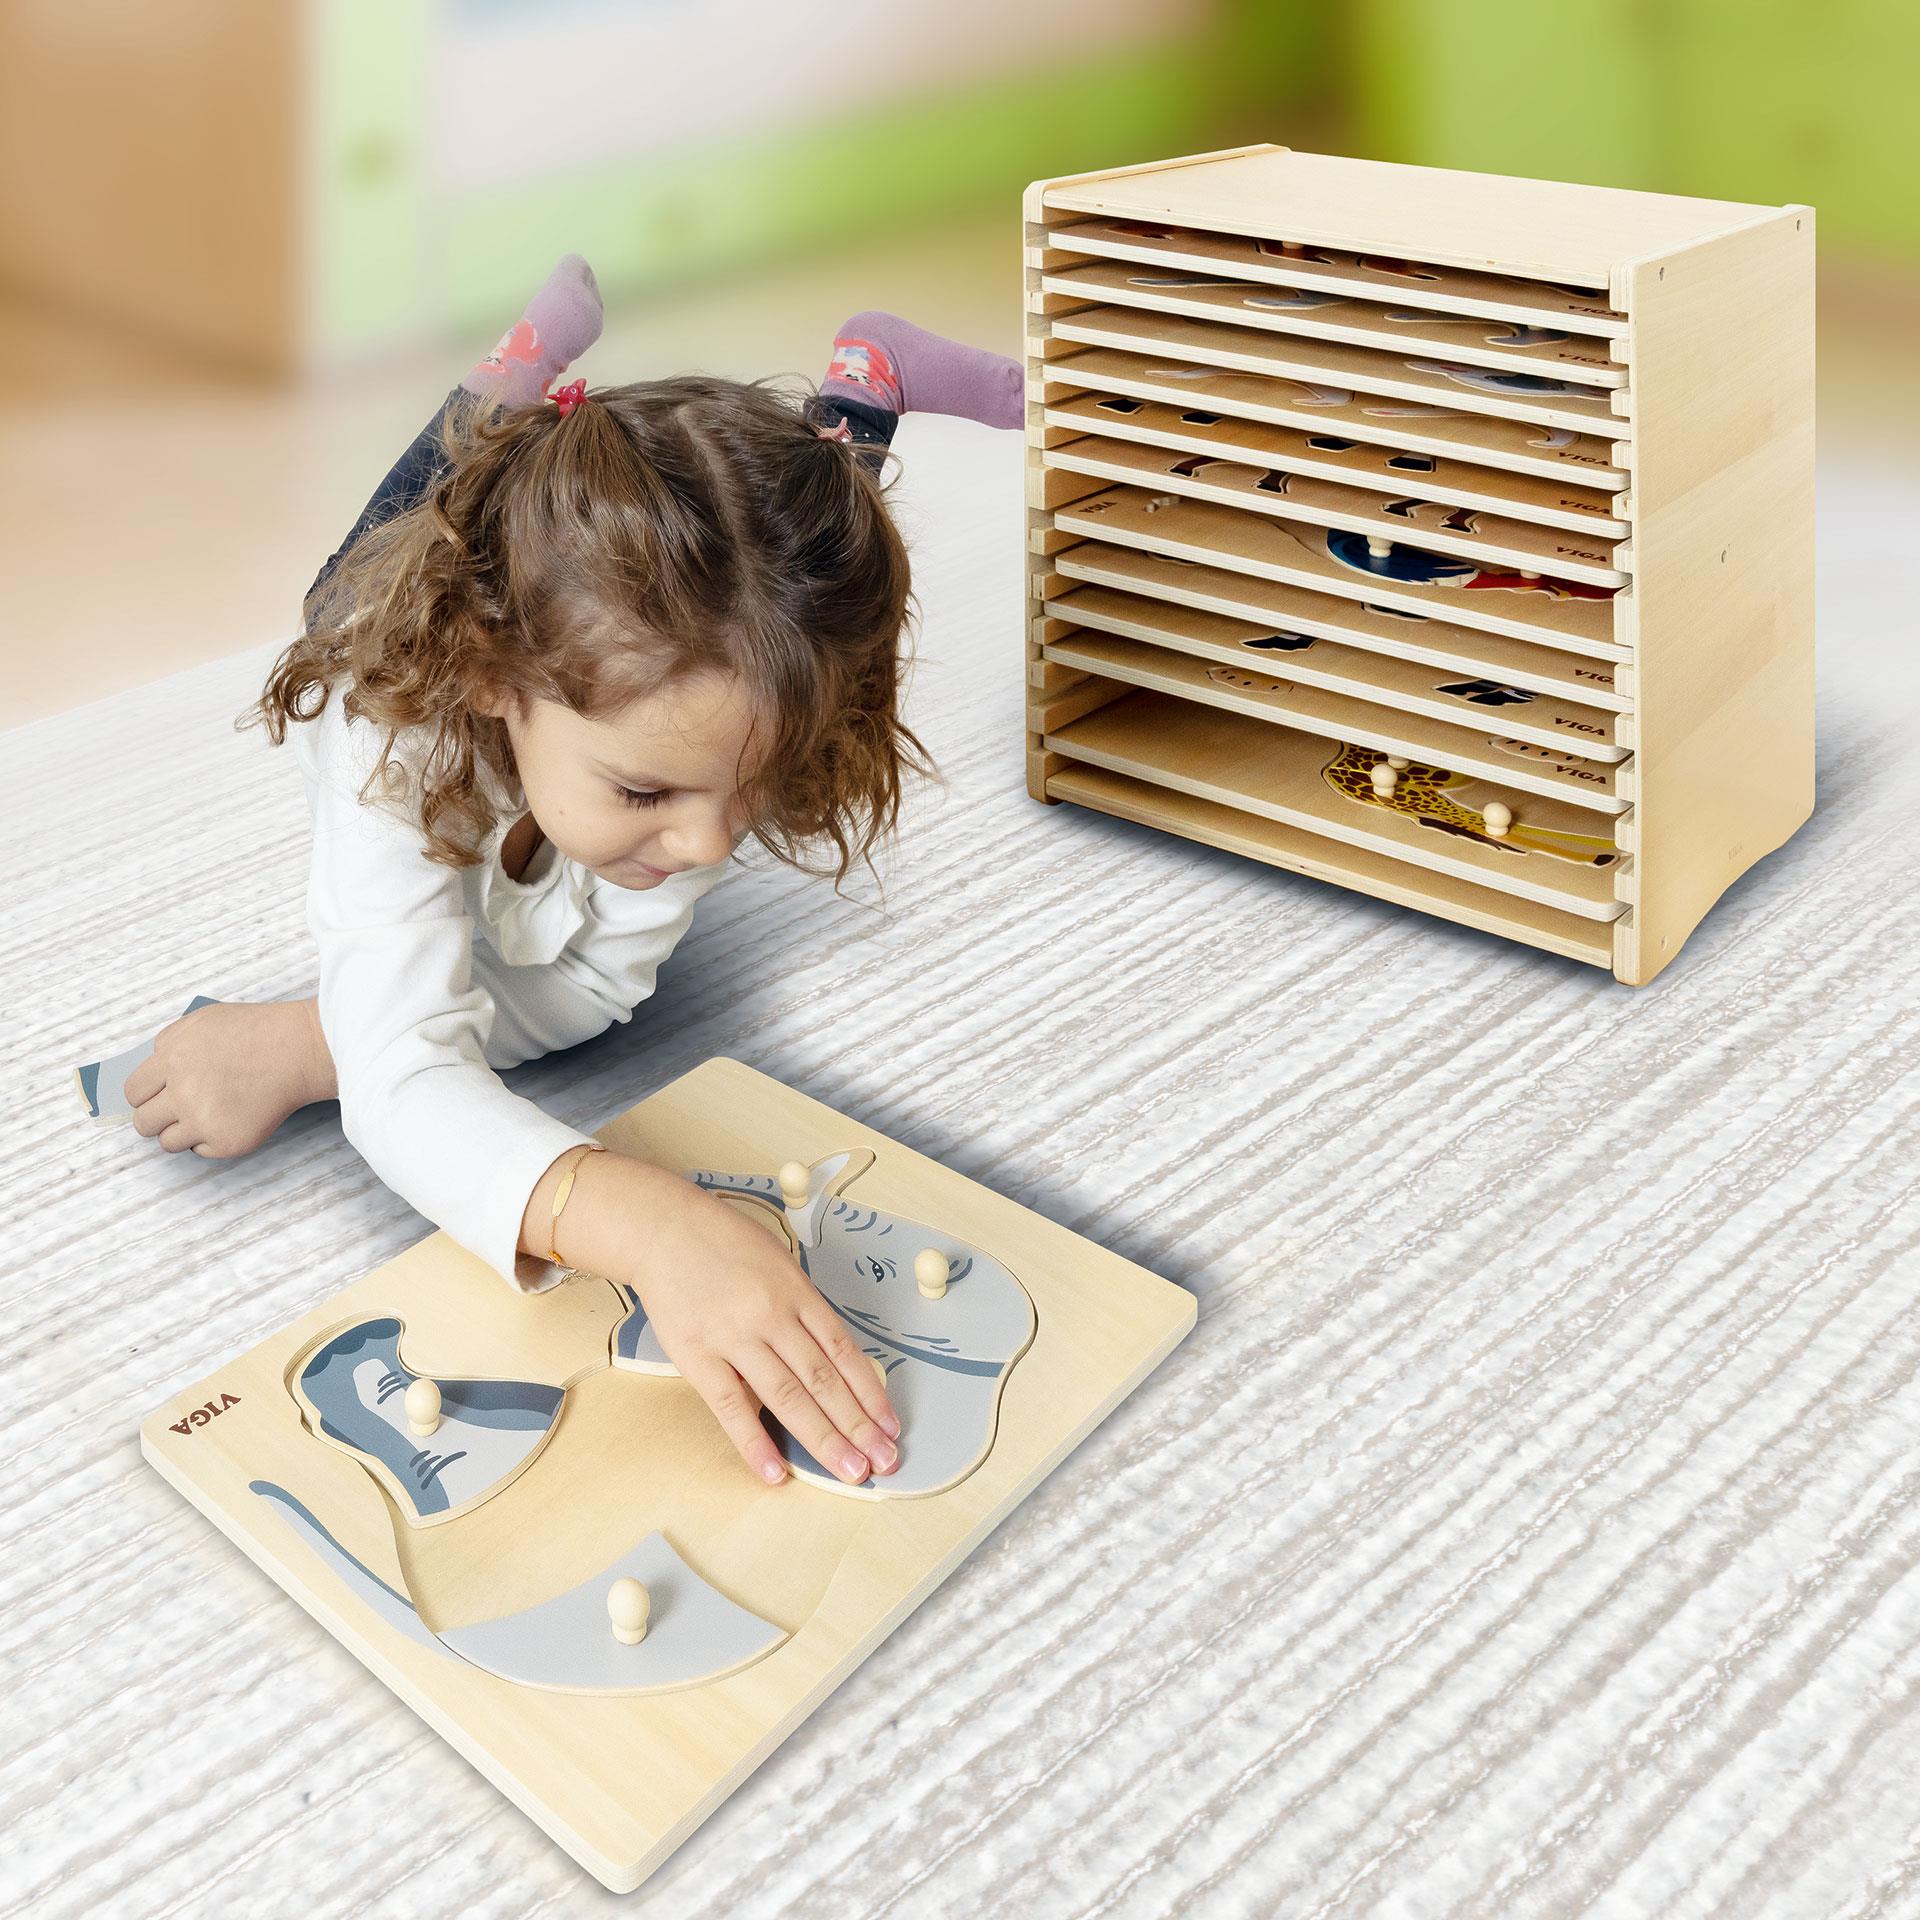 12 puzzle Montessori in box di legno